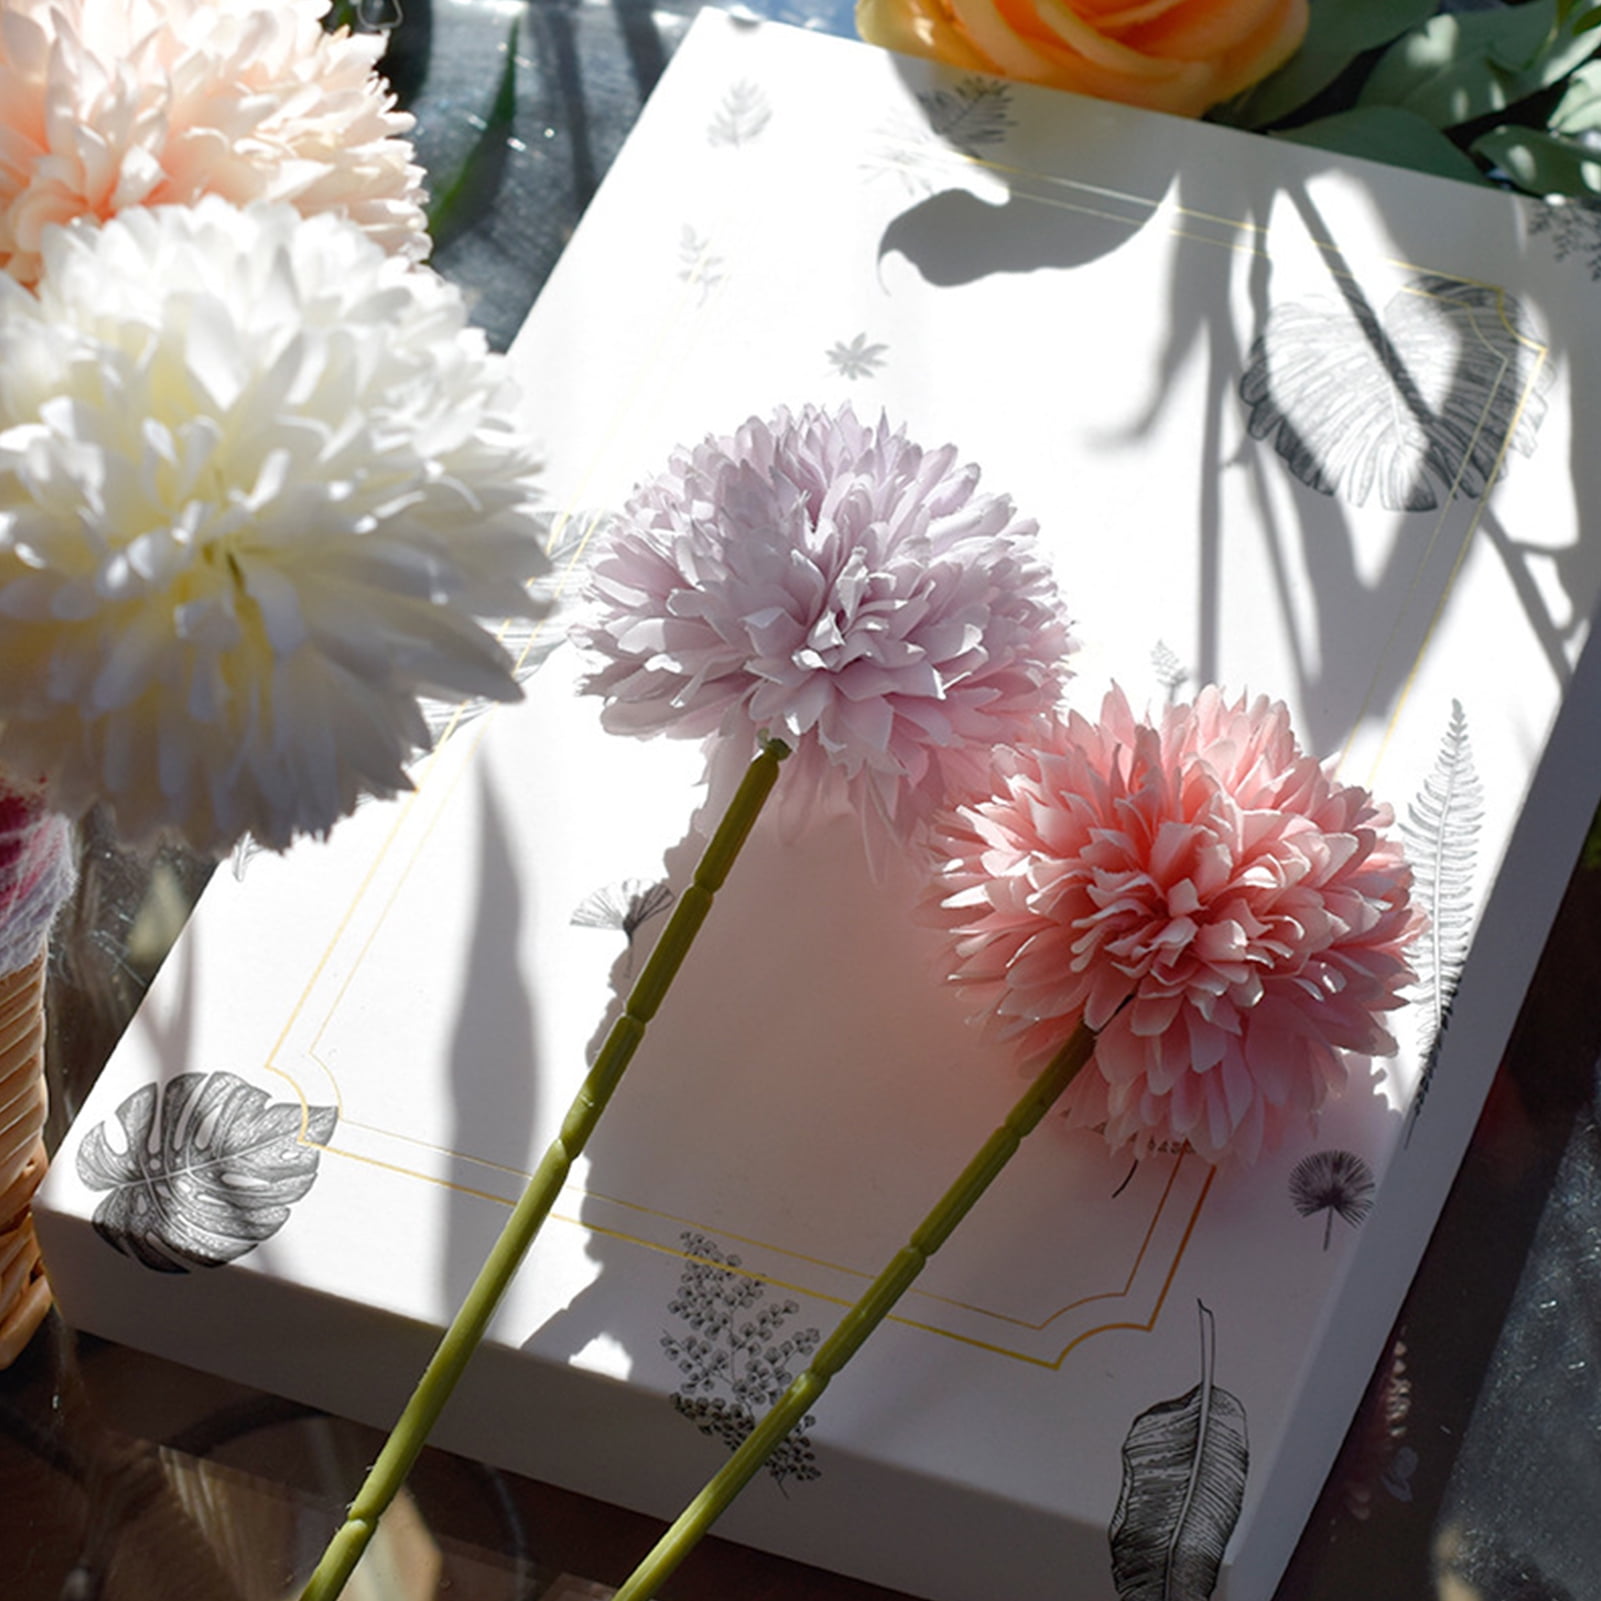 Details about   Plastic Artificial Dandelion Fake Flower Bouquet Wedding Party Office Home Decor 